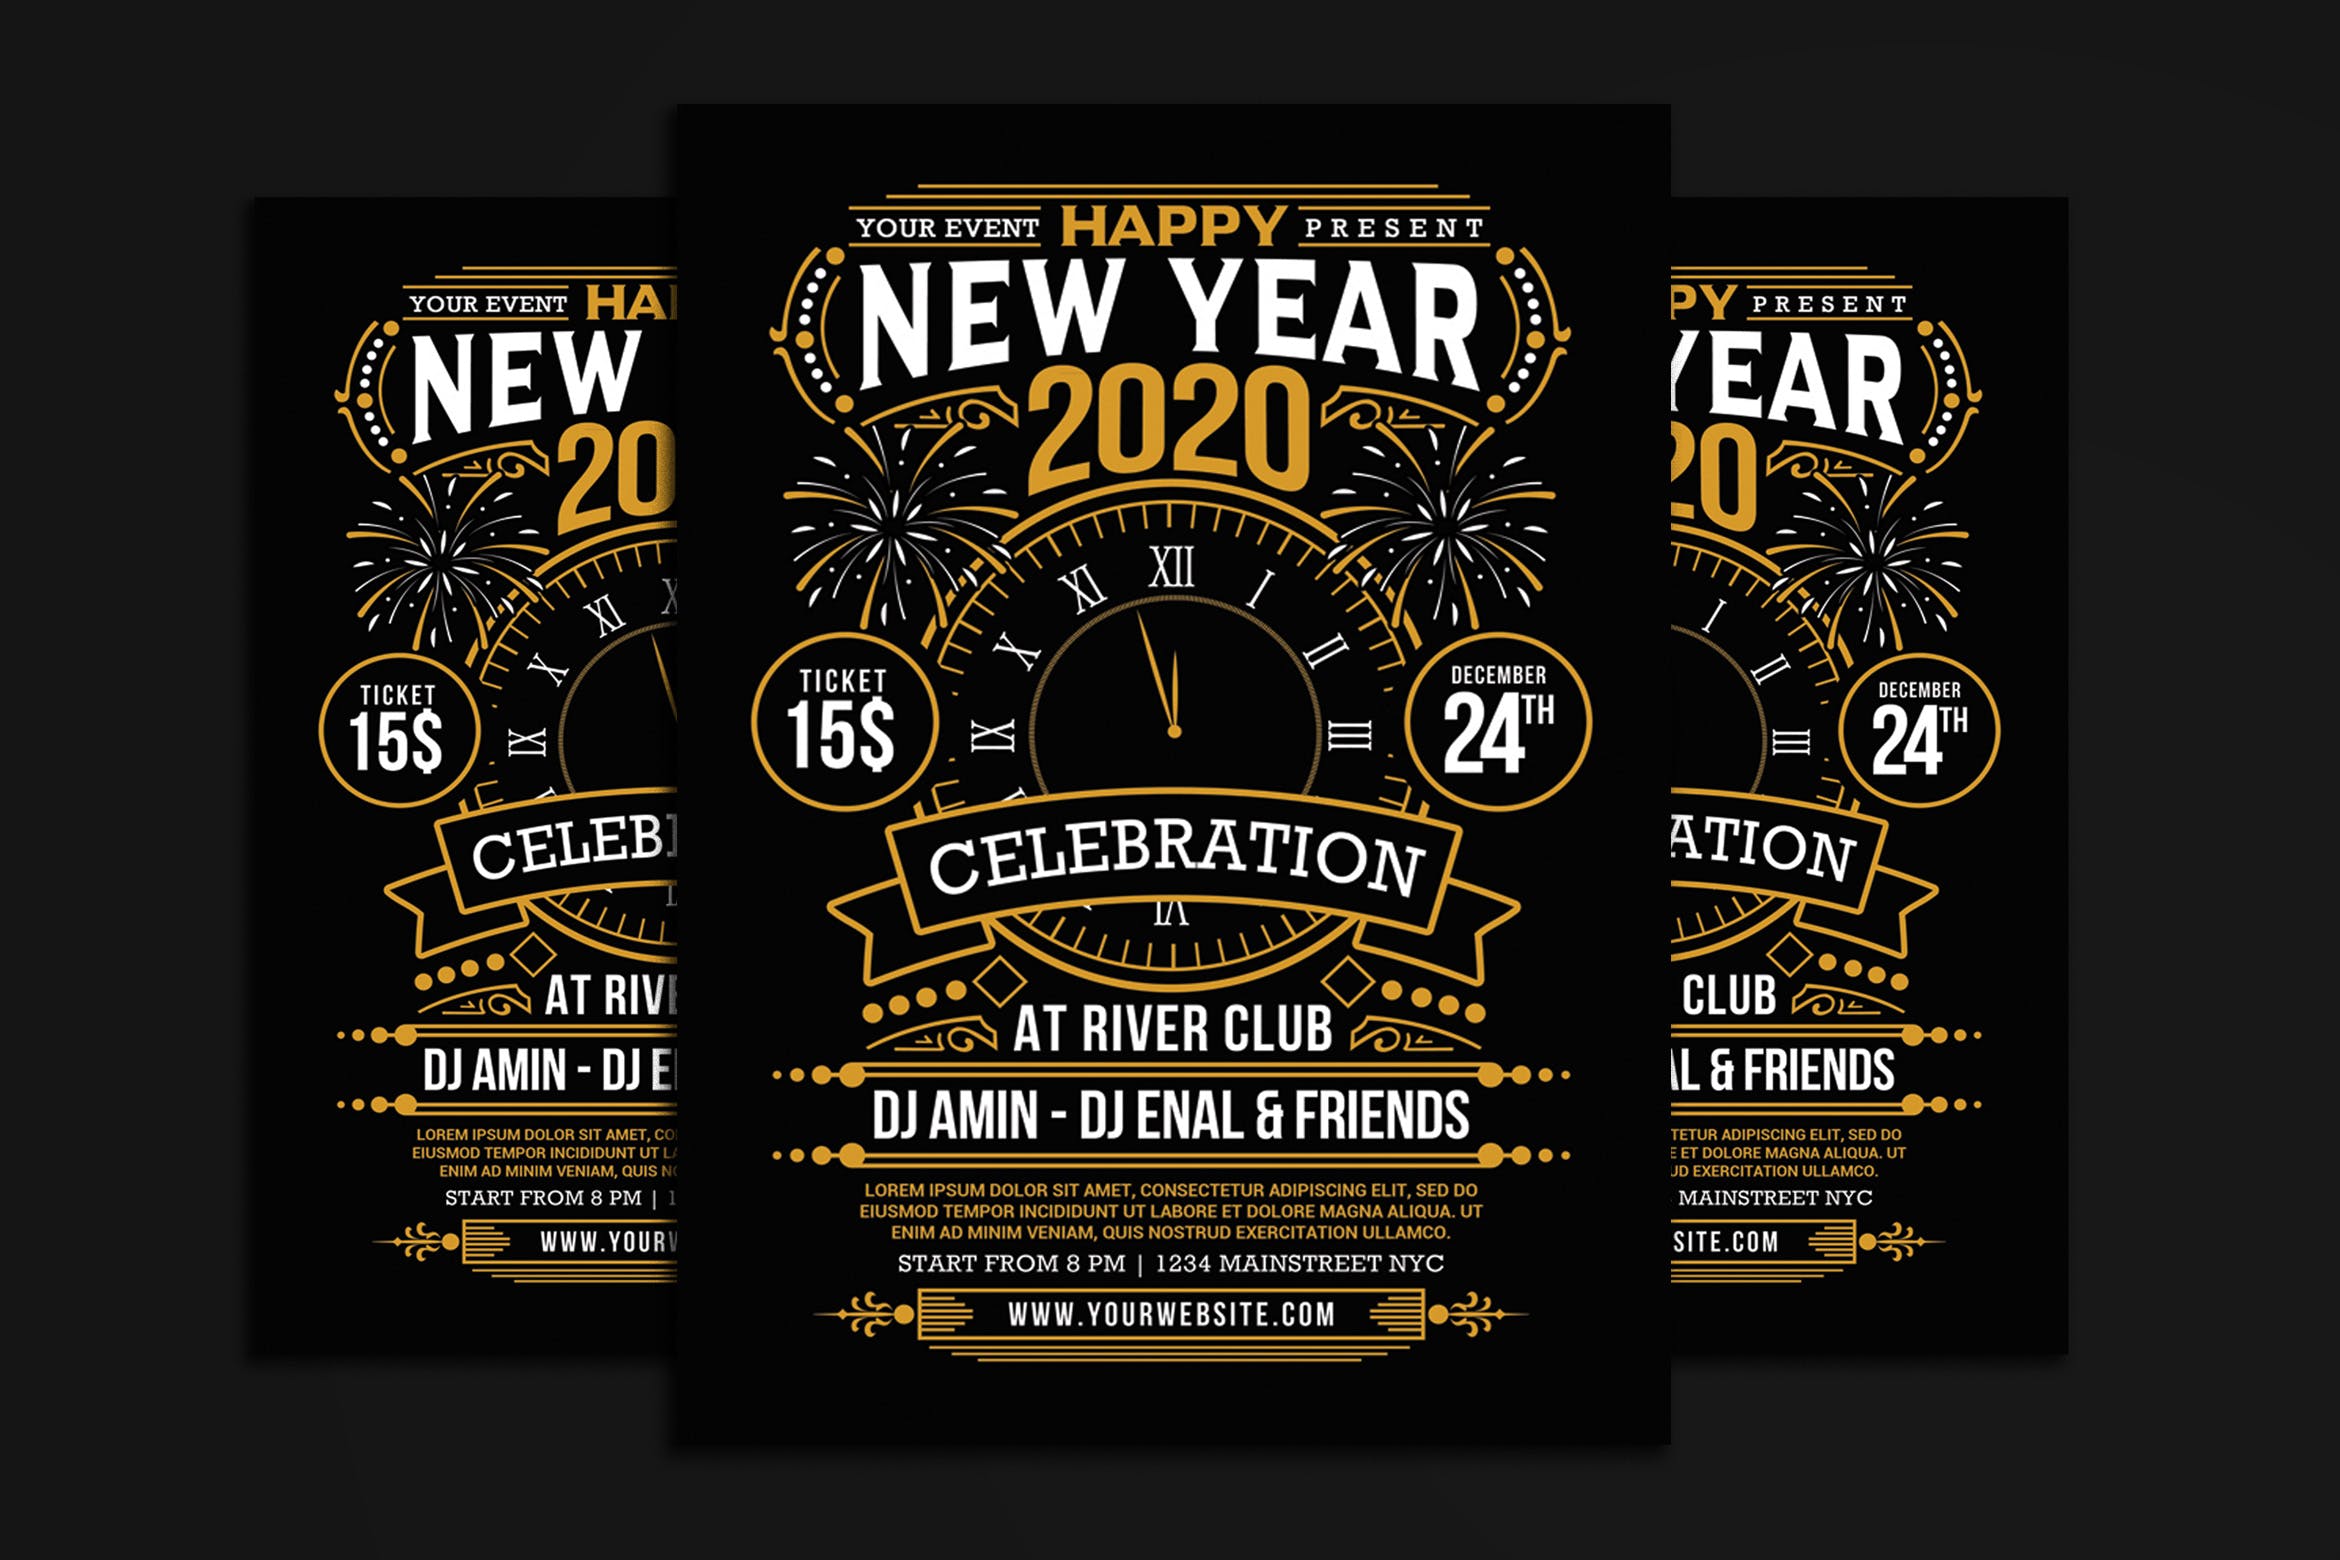 2020年新年倒计时活动邀请海报传单模板 New Year 2020 Party Celebration插图